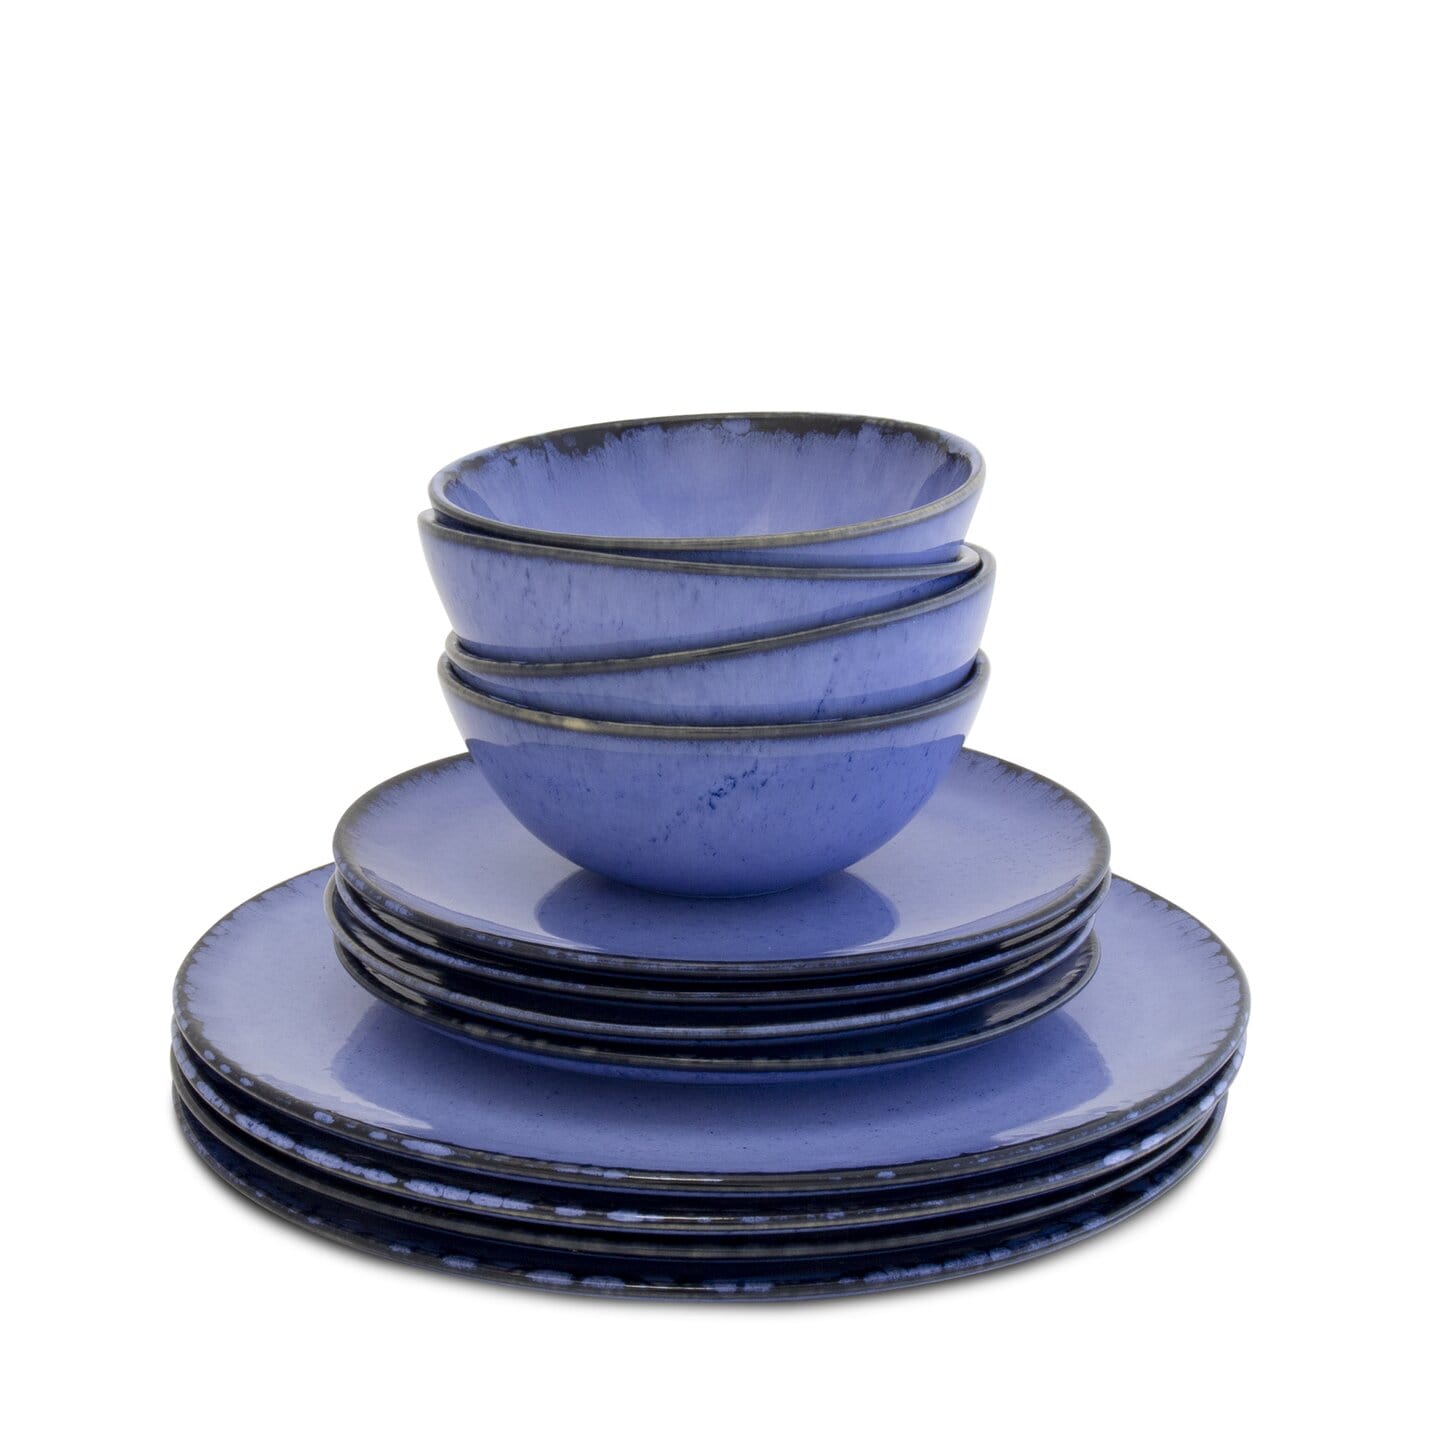 Keramik Liebe ♥ Onlineshop für Keramik & Steingut aus Portugal